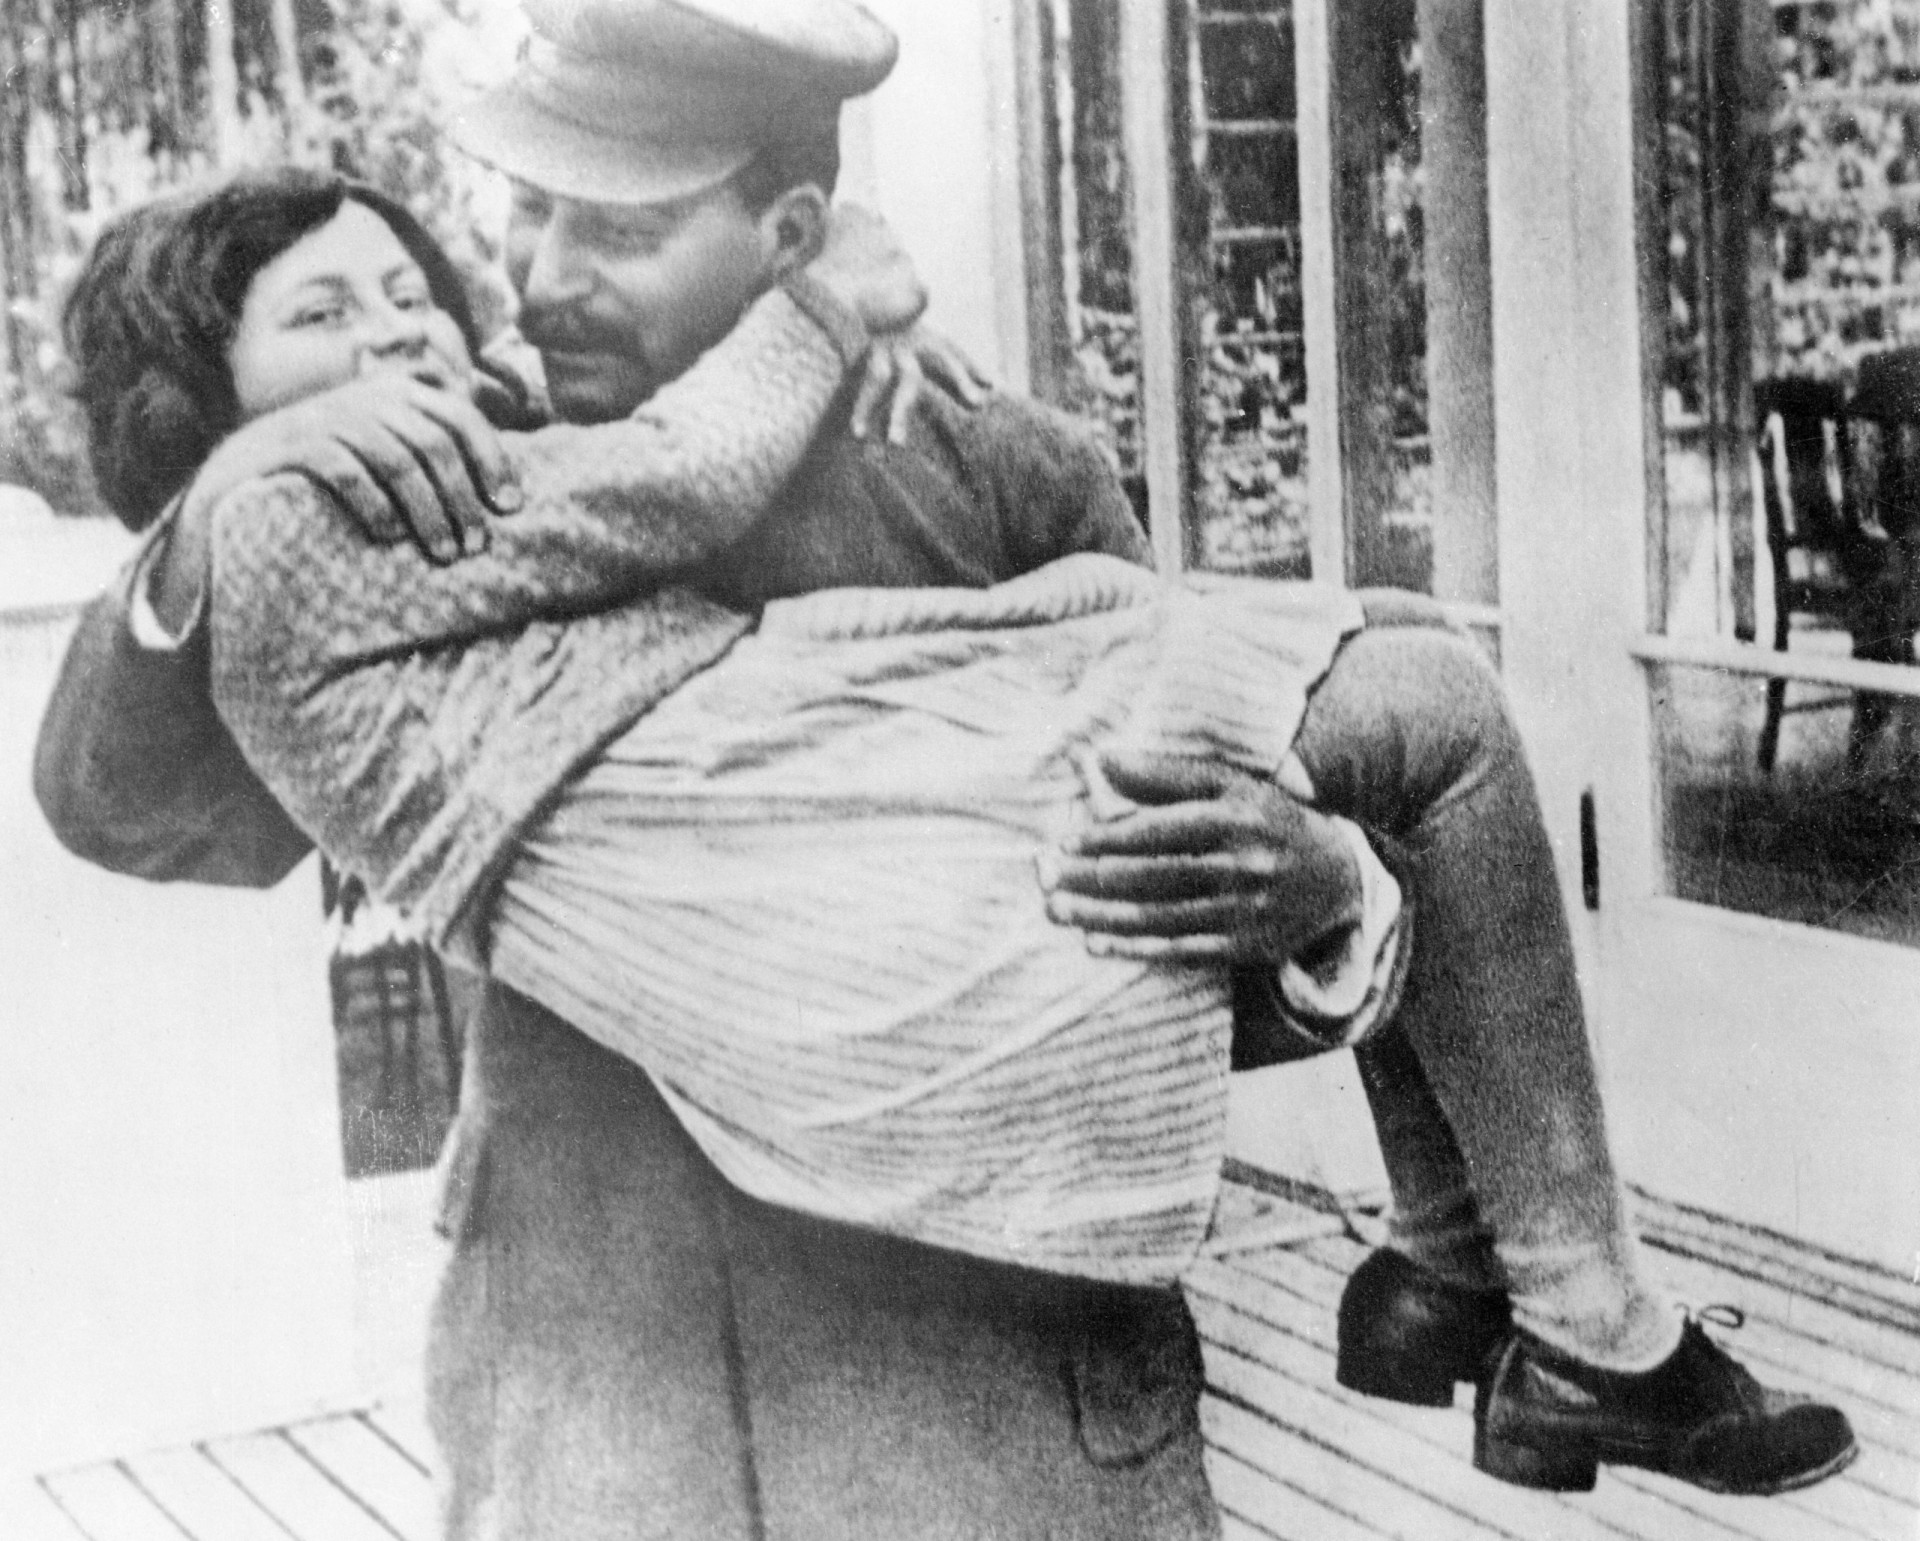 <p>Swetlana Alliluyew, geboren am 28. Februar 1926, war Josef Stalins jüngstes Kind und einzige Tochter. Stalin schien mehr Interesse und Zuneigung für Swetlana zu zeigen als für seine anderen Kinder, war aber dennoch während ihrer Jugend weitgehend abwesend.</p><p>Sie können auch mögen:<a href="https://de.starsinsider.com/n/294559?utm_source=msn.com&utm_medium=display&utm_campaign=referral_description&utm_content=537755"> Gosling vs. Reynolds: Welcher Ryan ist der Bessere?</a></p>